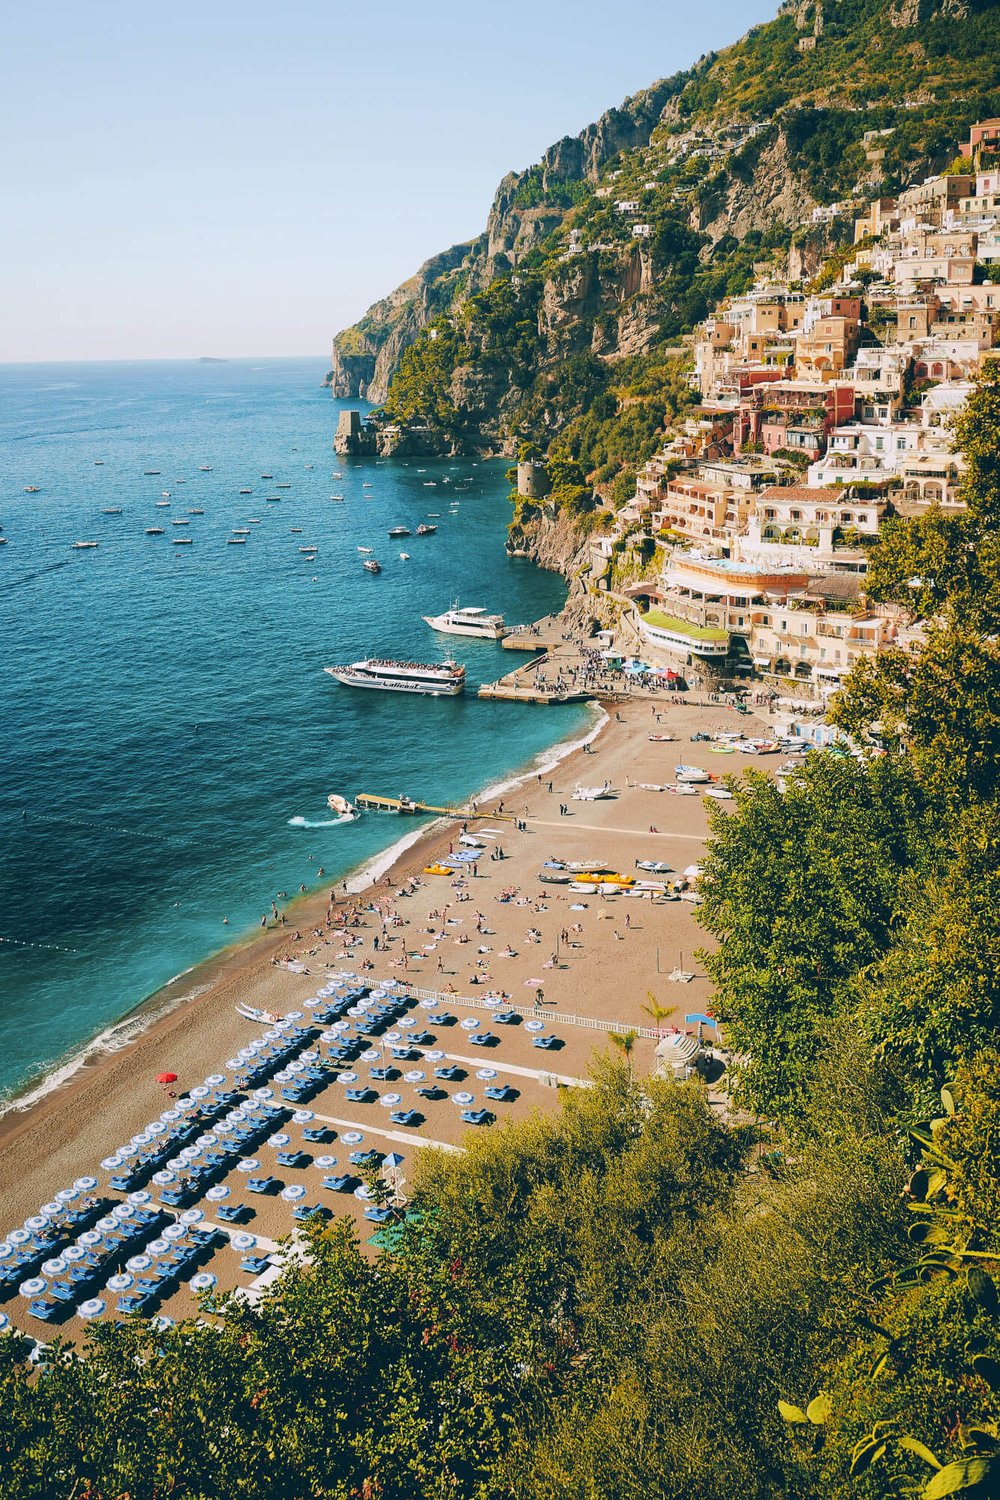 The most famous beach Positano has: Spiaggia Grande Positano